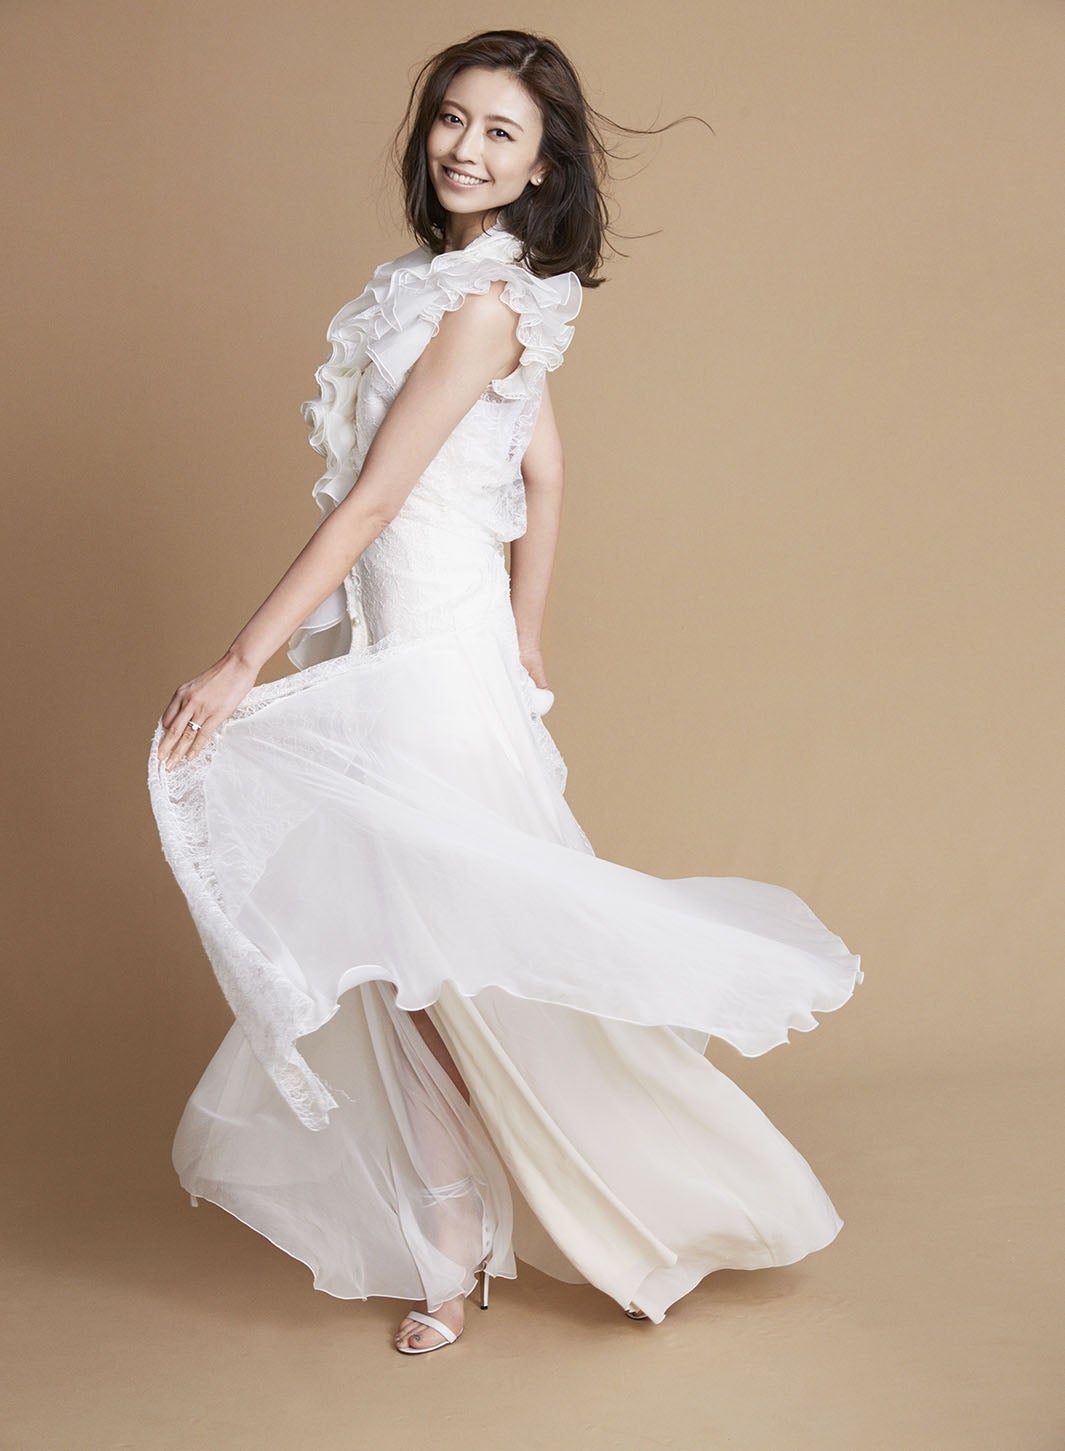 片瀬那奈、大胆カットでオトナのドレス姿 結婚への本音も告白 - モデルプレス